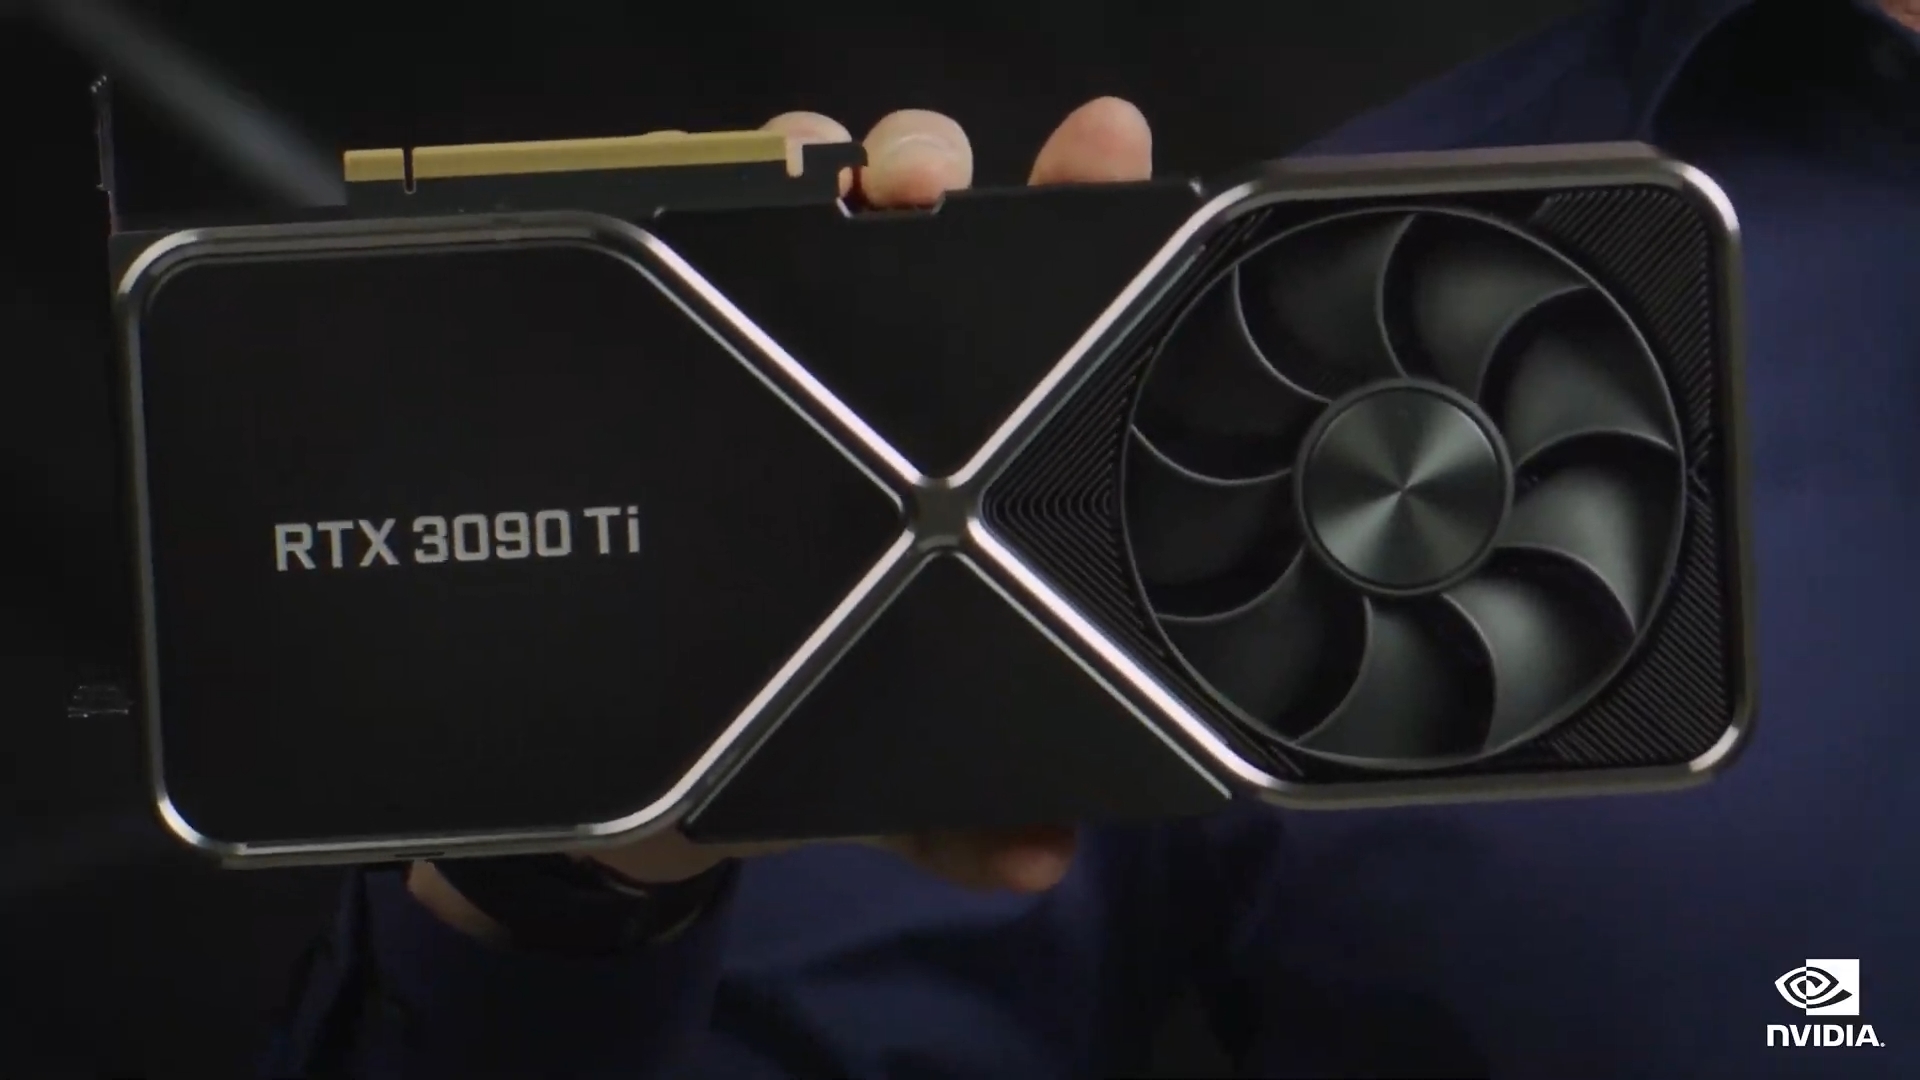 Rtx 3090 Ti Founders Edition Leak Shows Nvidia’s Future Gpu Plans Aren't Pretty